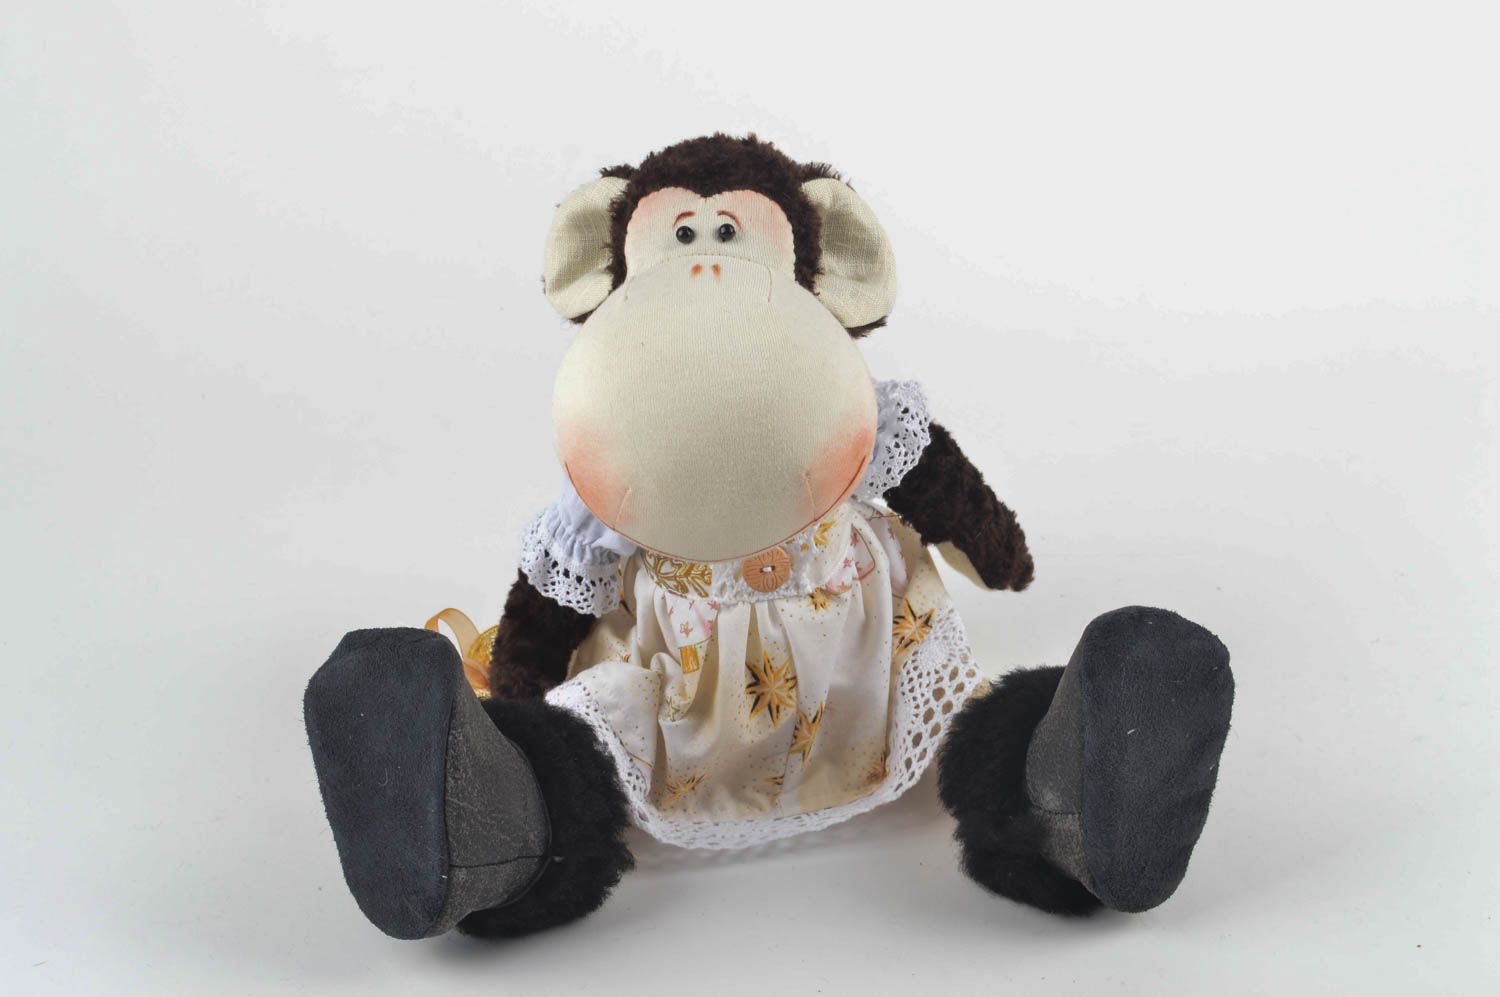 Игрушка обезьяна хэнд мэйд детская игрушка из льна мягкая игрушка интересная фото 5